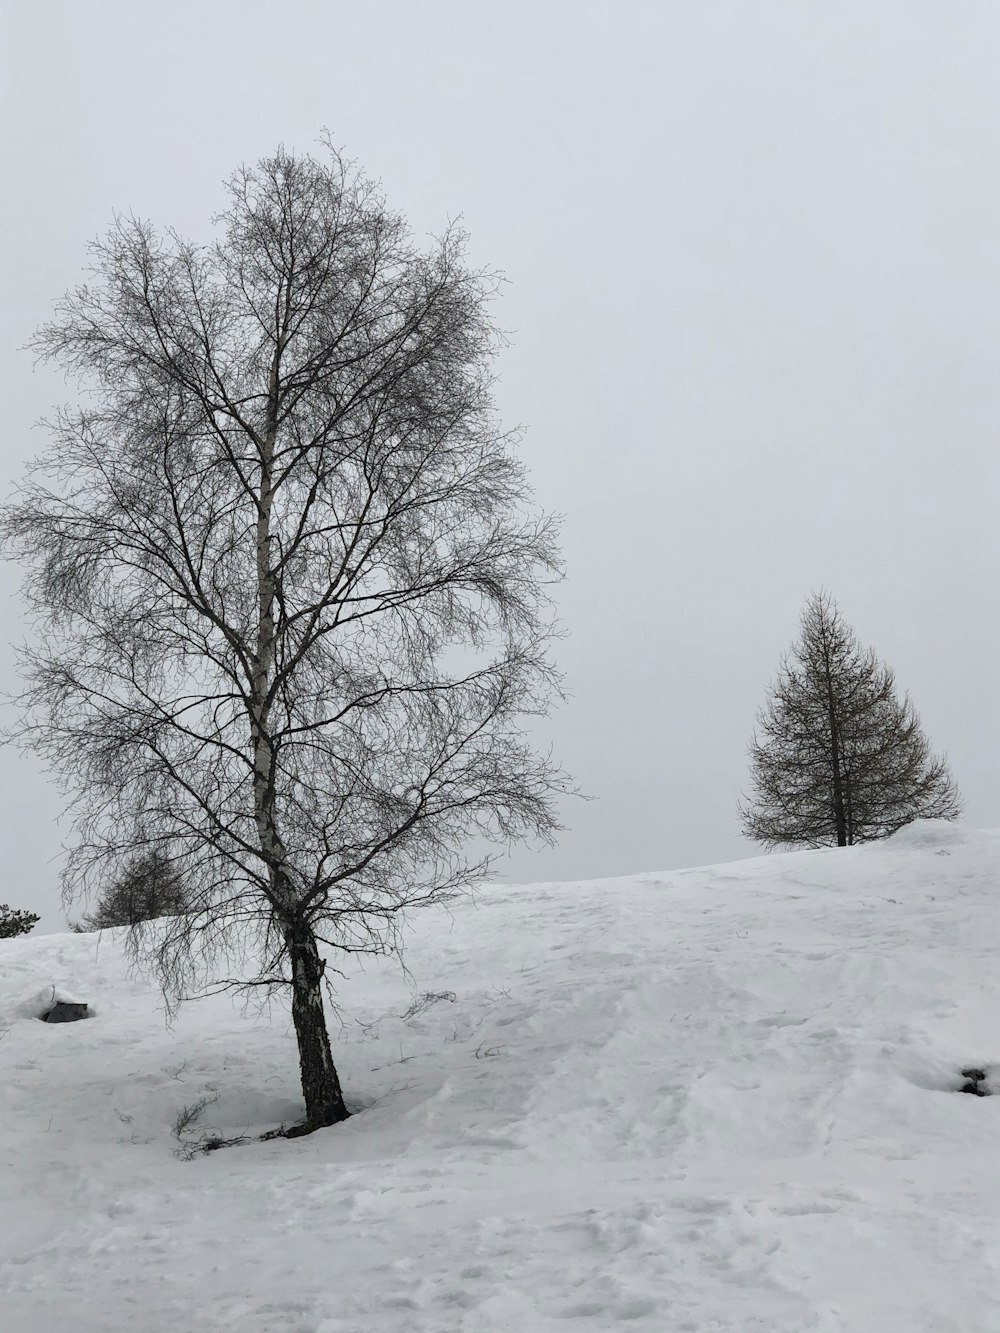 kahle Bäume auf schneebedecktem Boden tagsüber